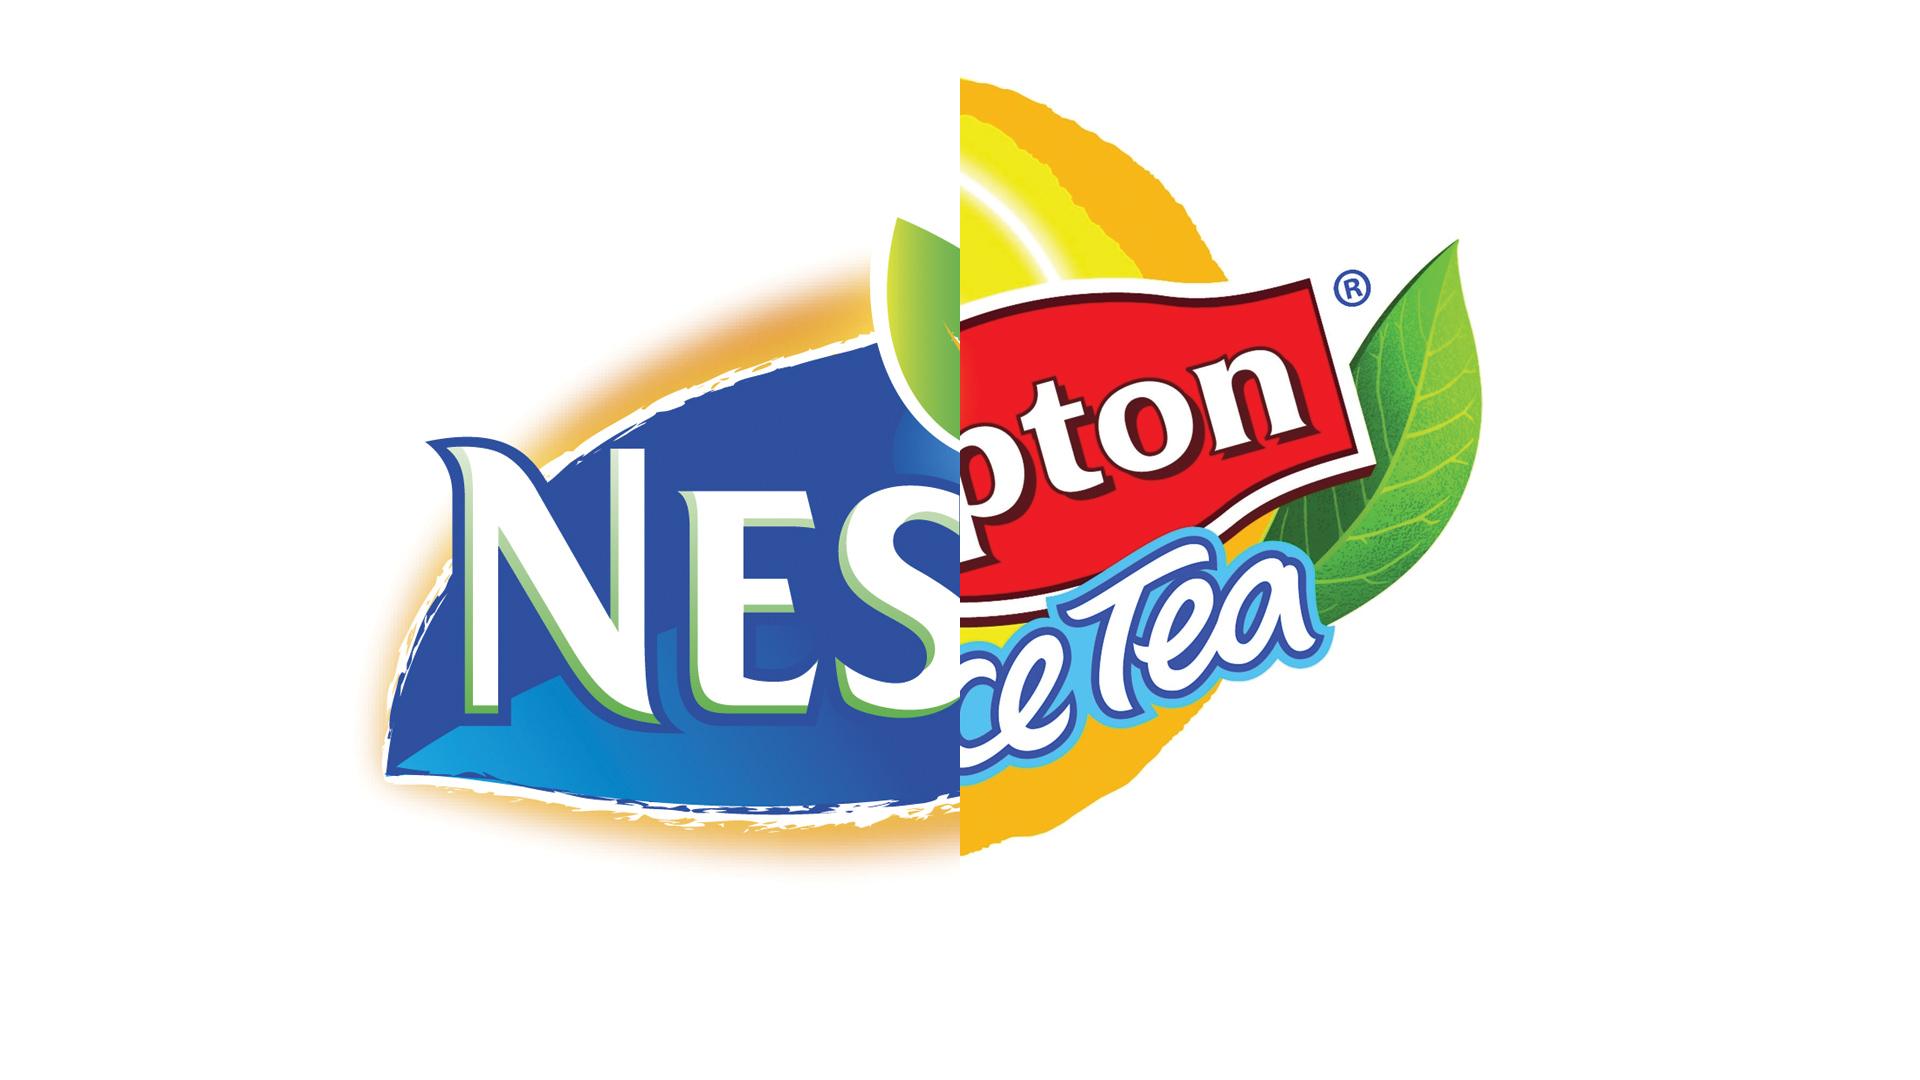 Nestea Logo - World Versus - Nestea vs Lipton Ice Tea